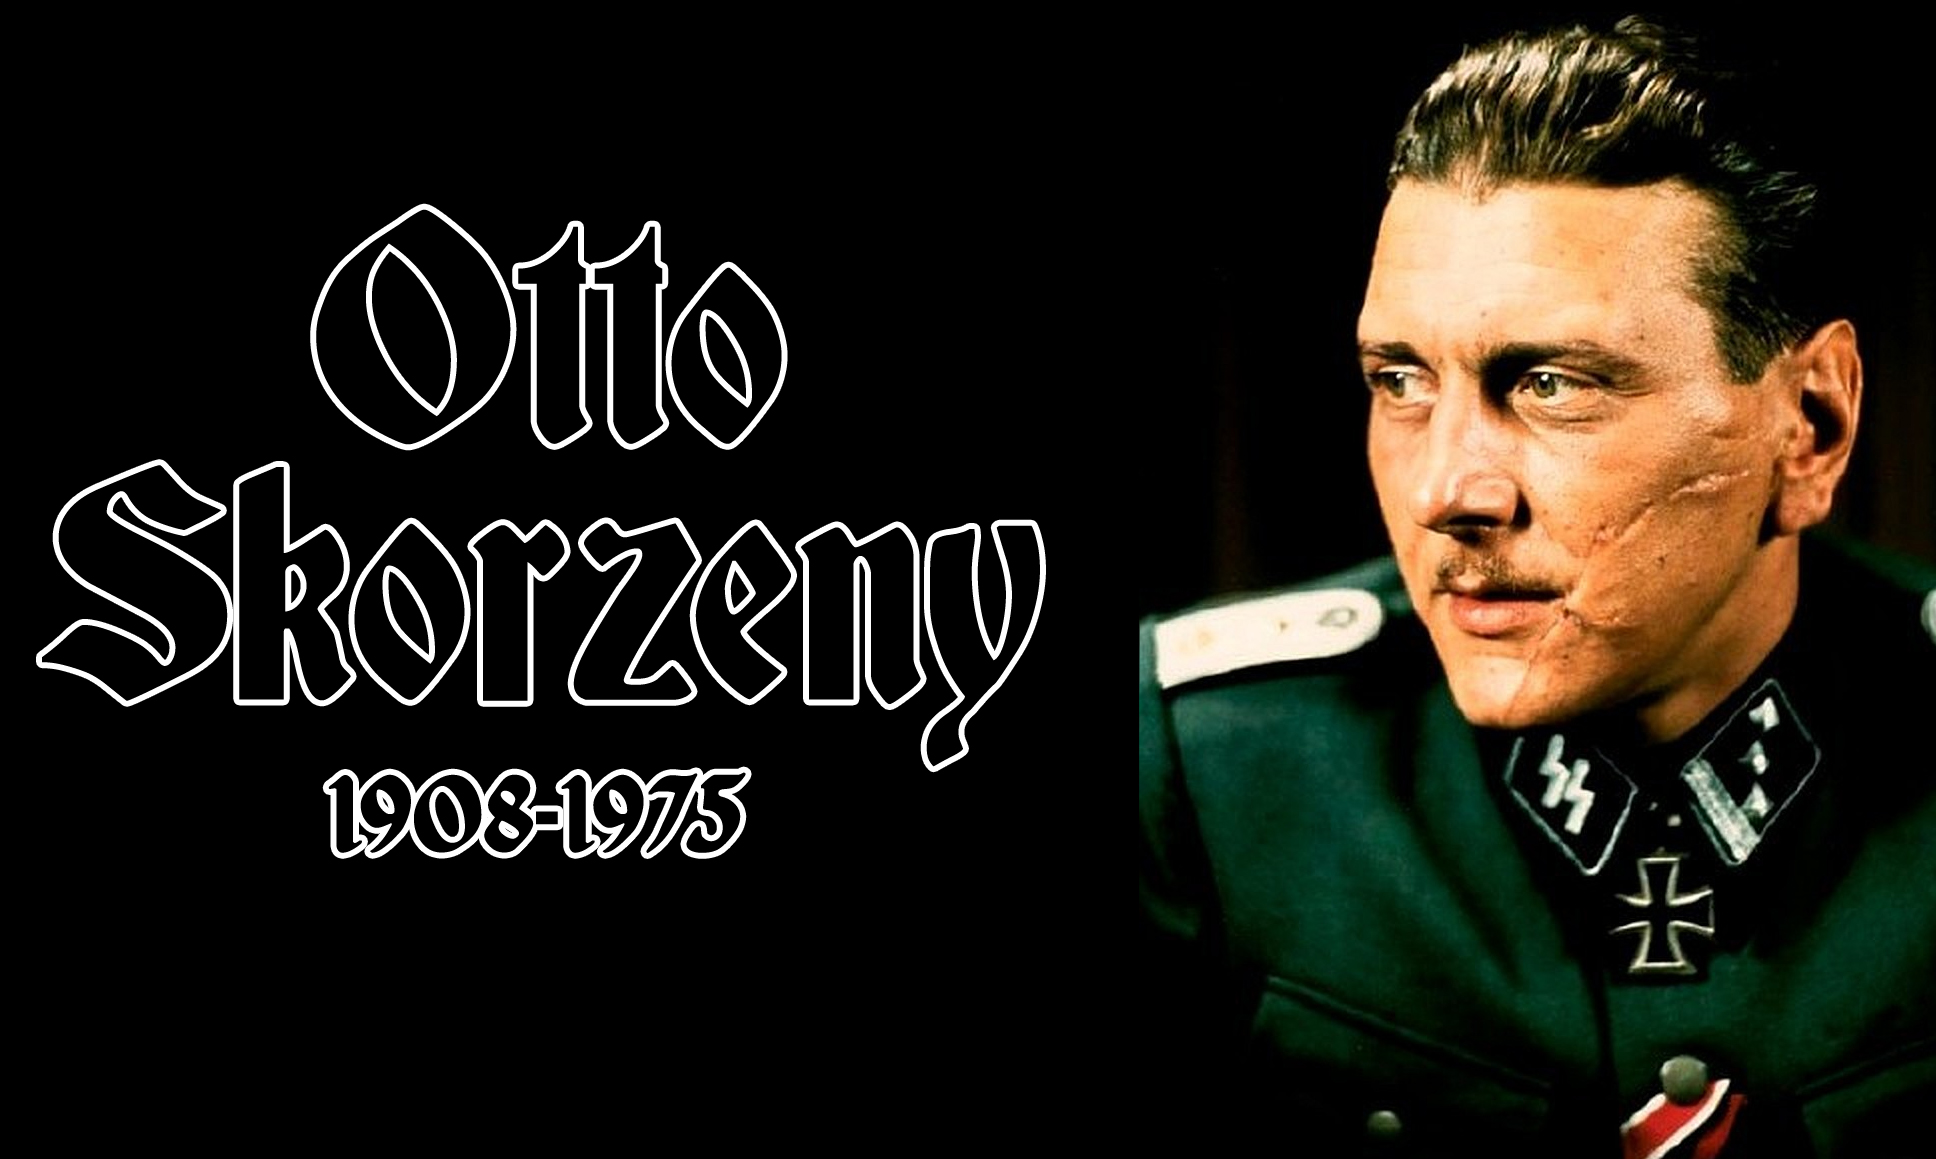 Otto Skorzeny Movie